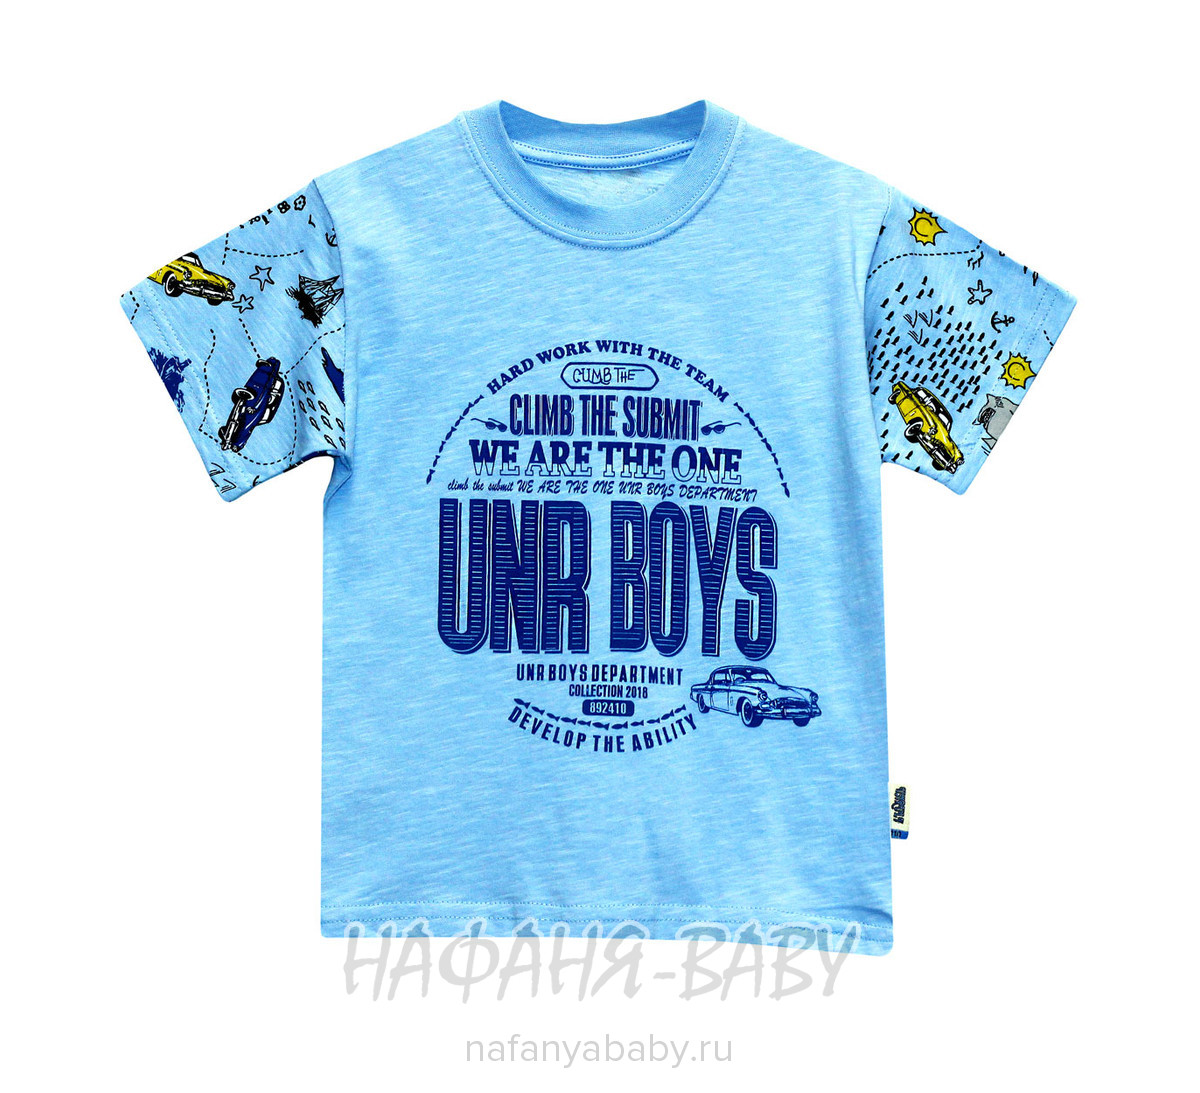 Детская футболка UNRULY арт: 2936, 5-9 лет, 1-4 года, цвет голубой, оптом Турция